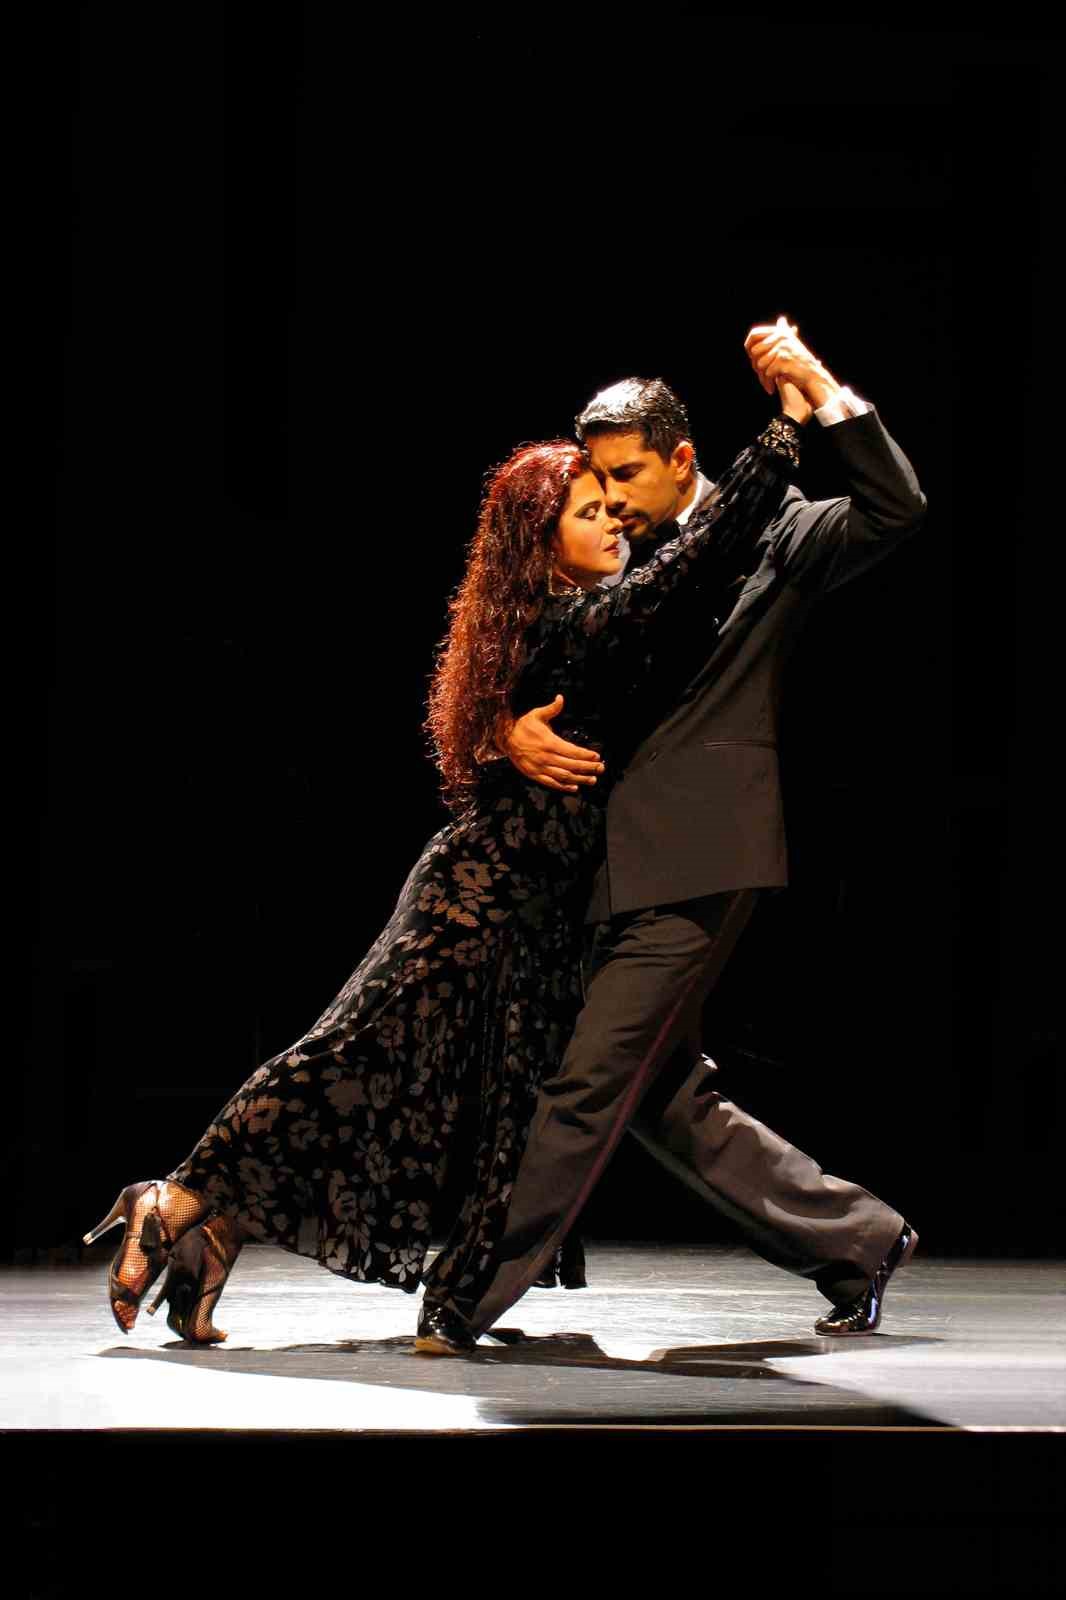 tango dans toplulugu forever tango 23 mayista seyirciyle bulusuyor 4 CvAFZuUf